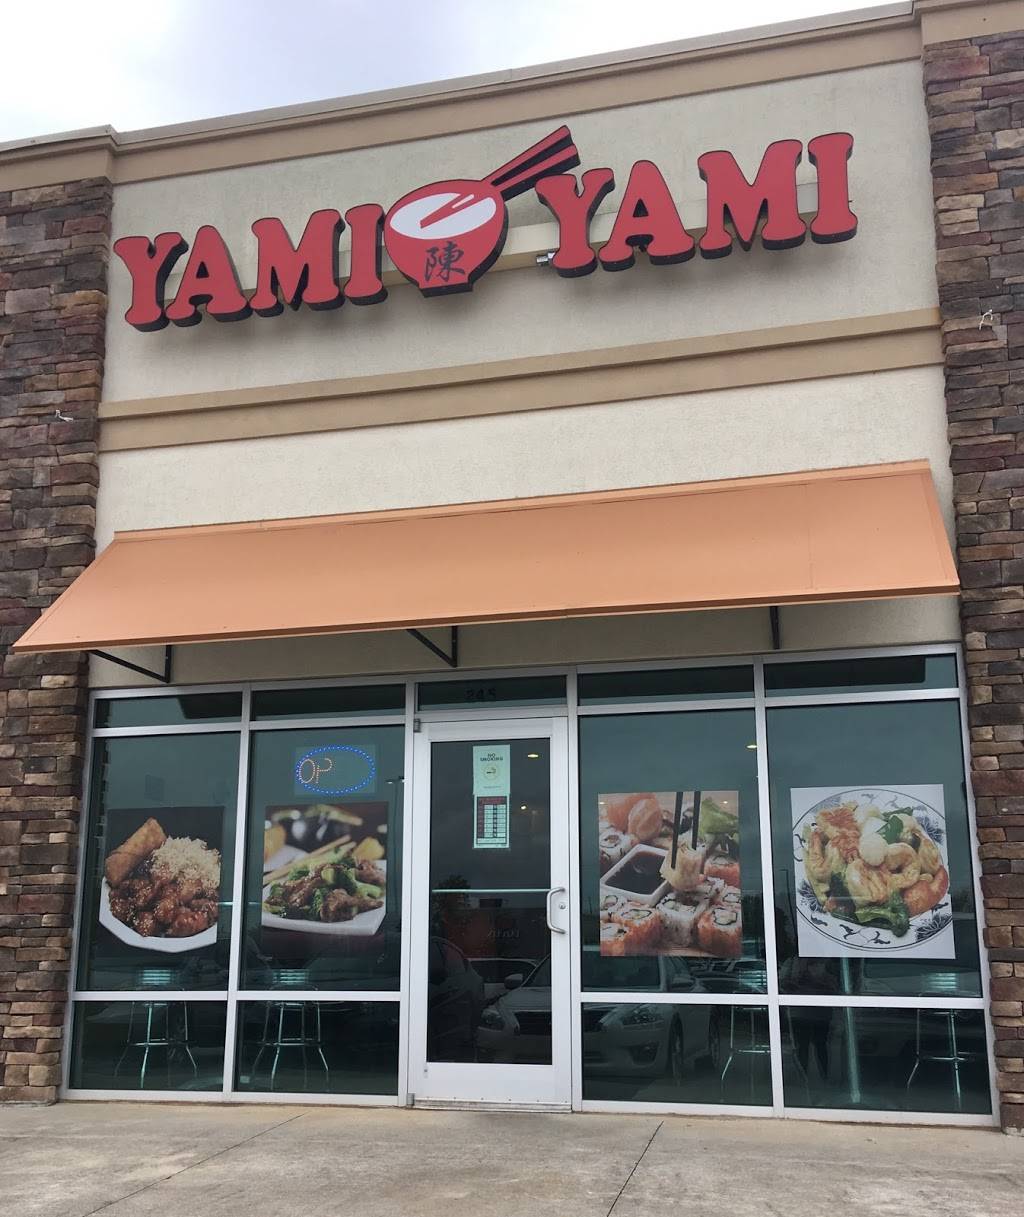 Yami Yami | restaurant | 770 GA-96 #245, Bonaire, GA 31005, USA | 4782180315 OR +1 478-218-0315